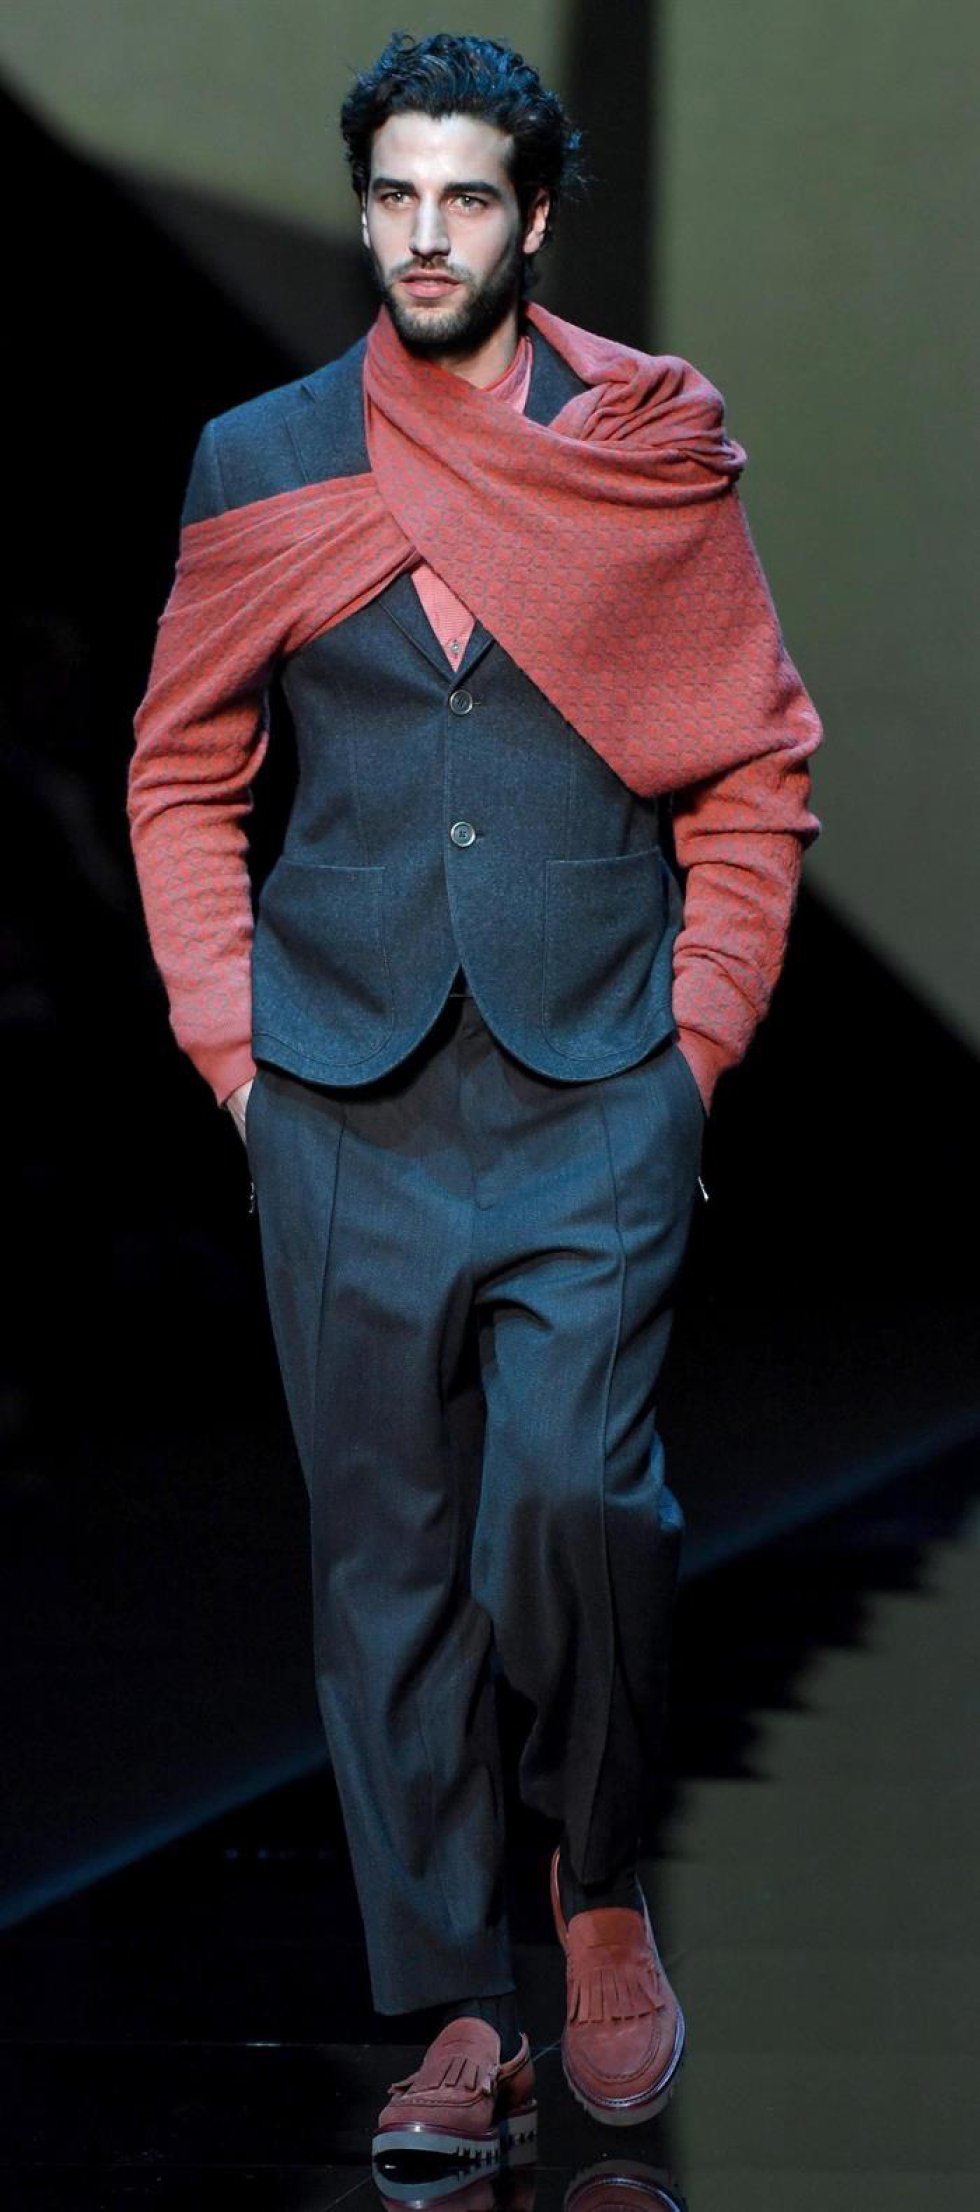 Semana de moda en Milán: [Fotos] Las tendencias para hombres que imponen desde Italia | Fotogalería | Tendencias | Caracol Radio